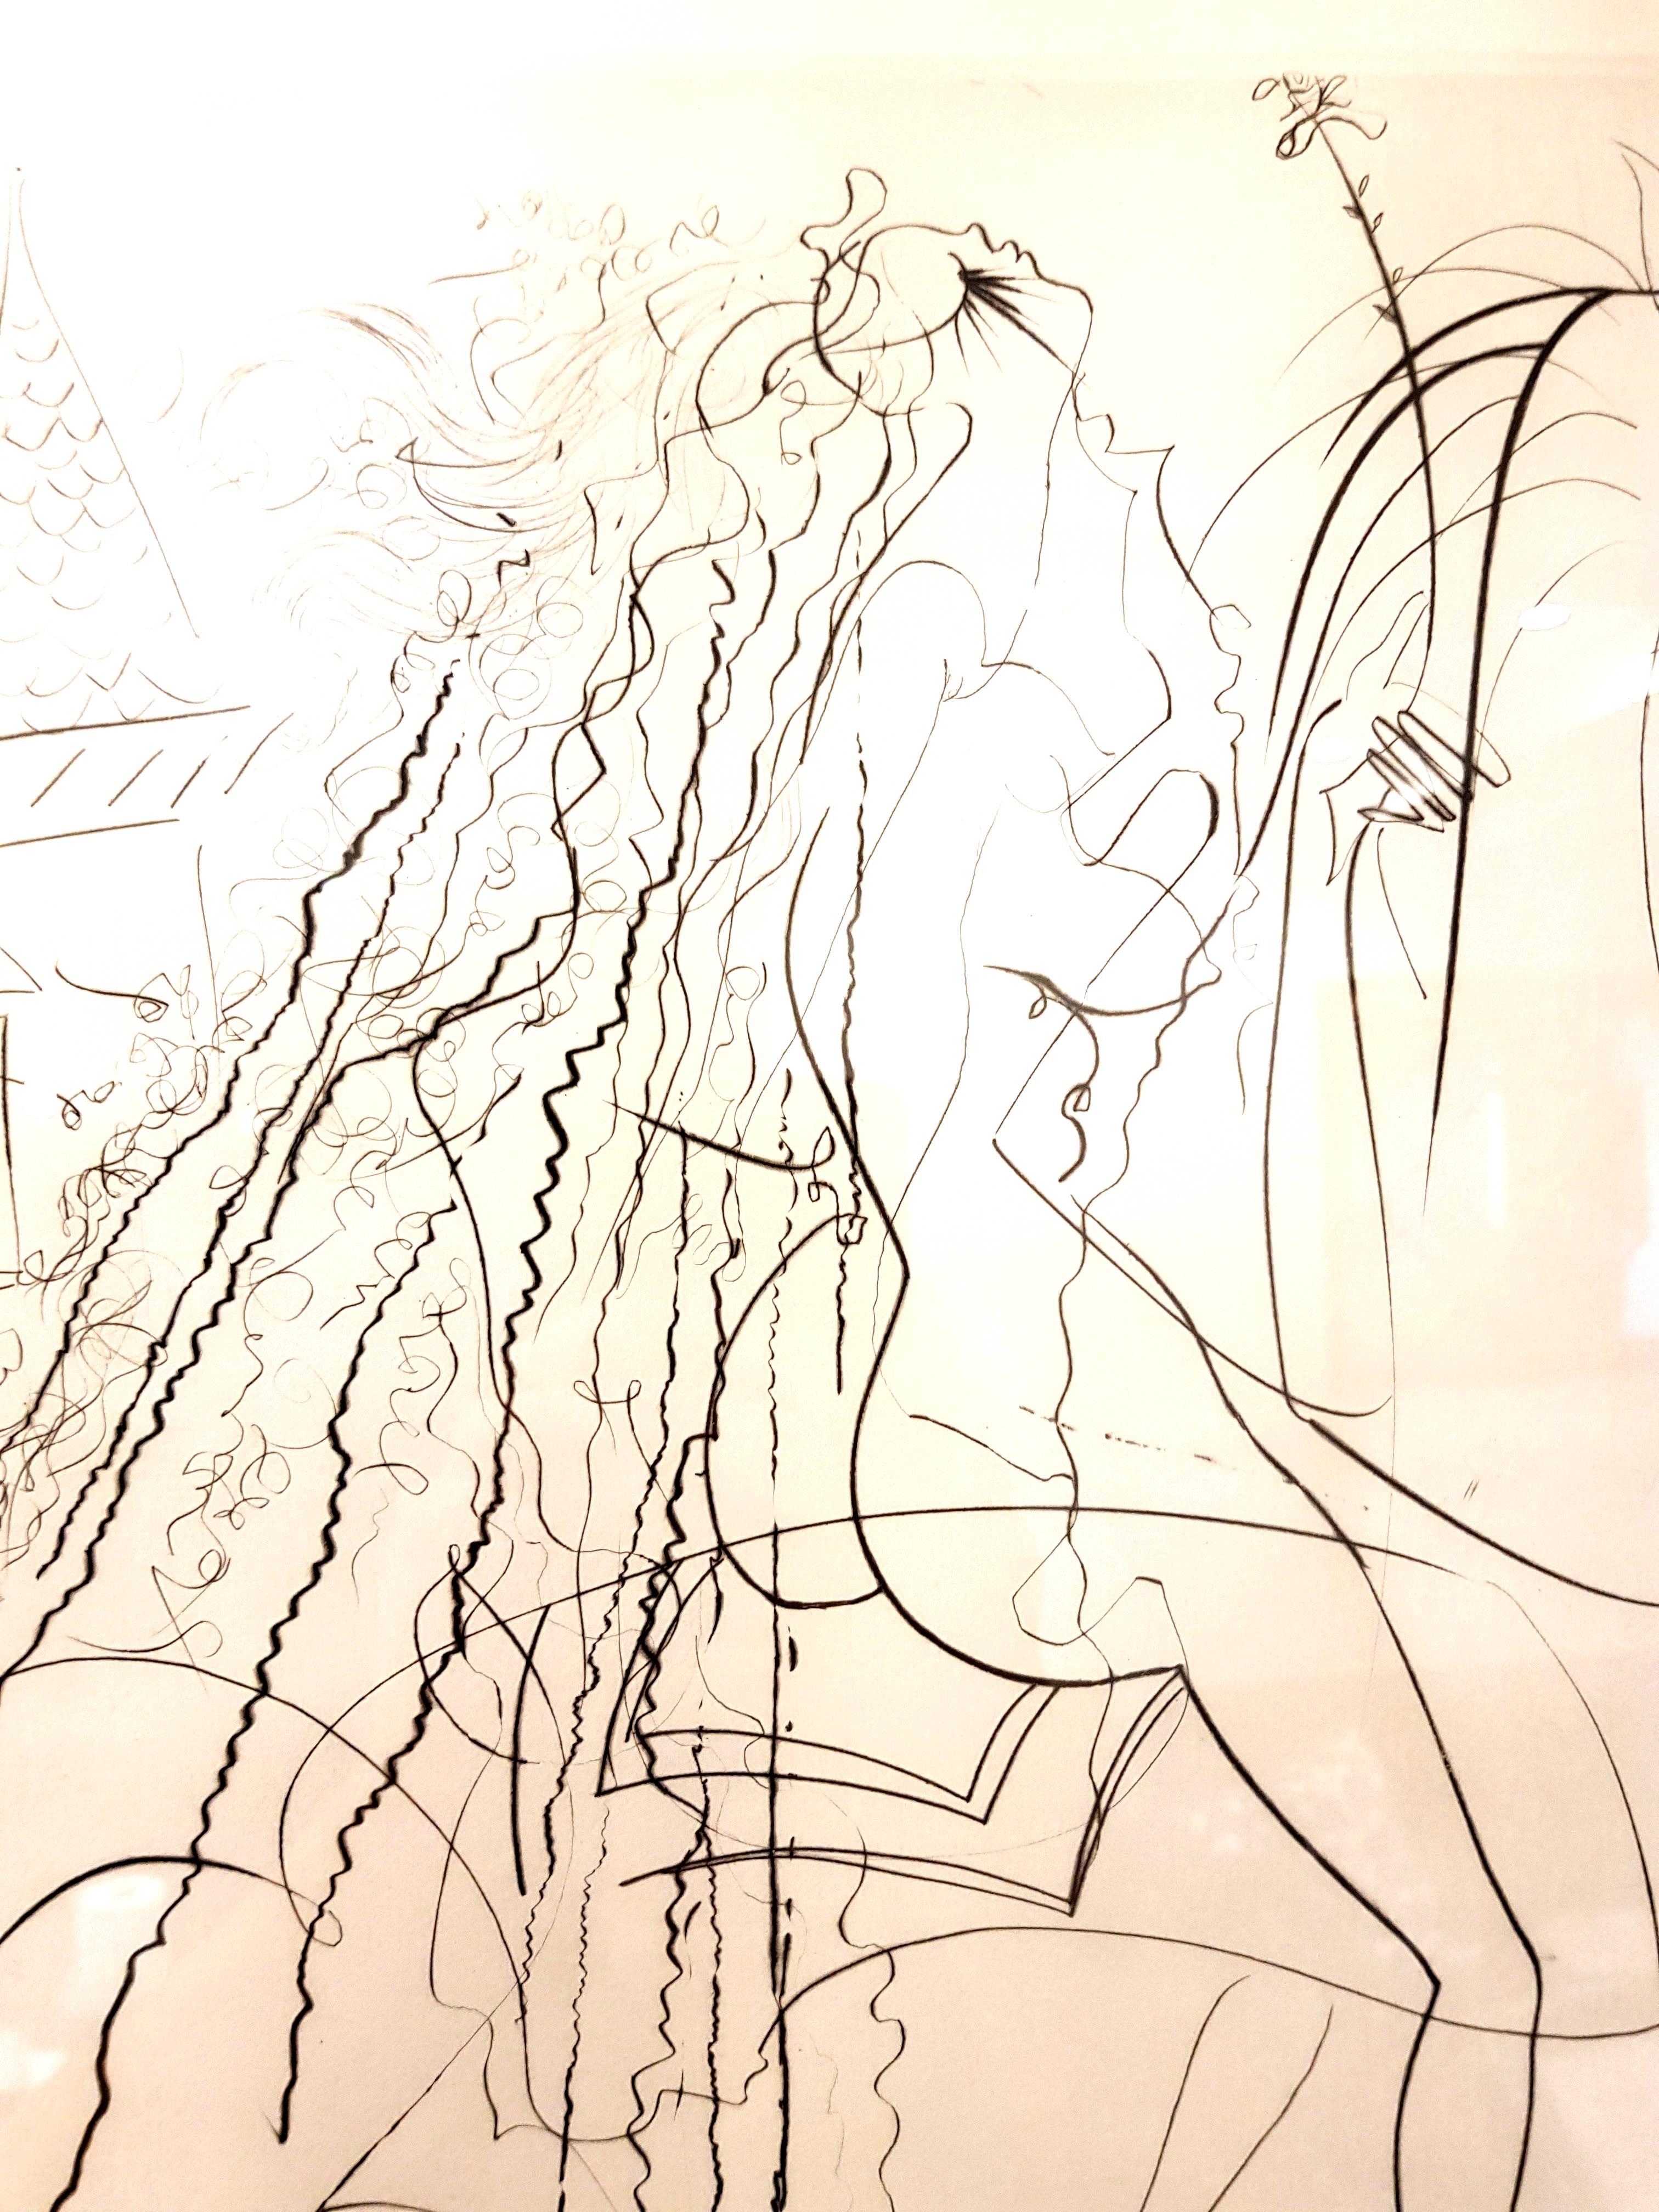 Salvador Dali - Original handsignierte Radierung
Titel: Dame Godiva
Maße: 50 x 37 cm
Handsigniert
Auflage: EA
Referenz: Michler / Lopsinger 337

Salvador Dalí

Salvador Dali wurde als Sohn eines angesehenen Notars in der nordspanischen Kleinstadt